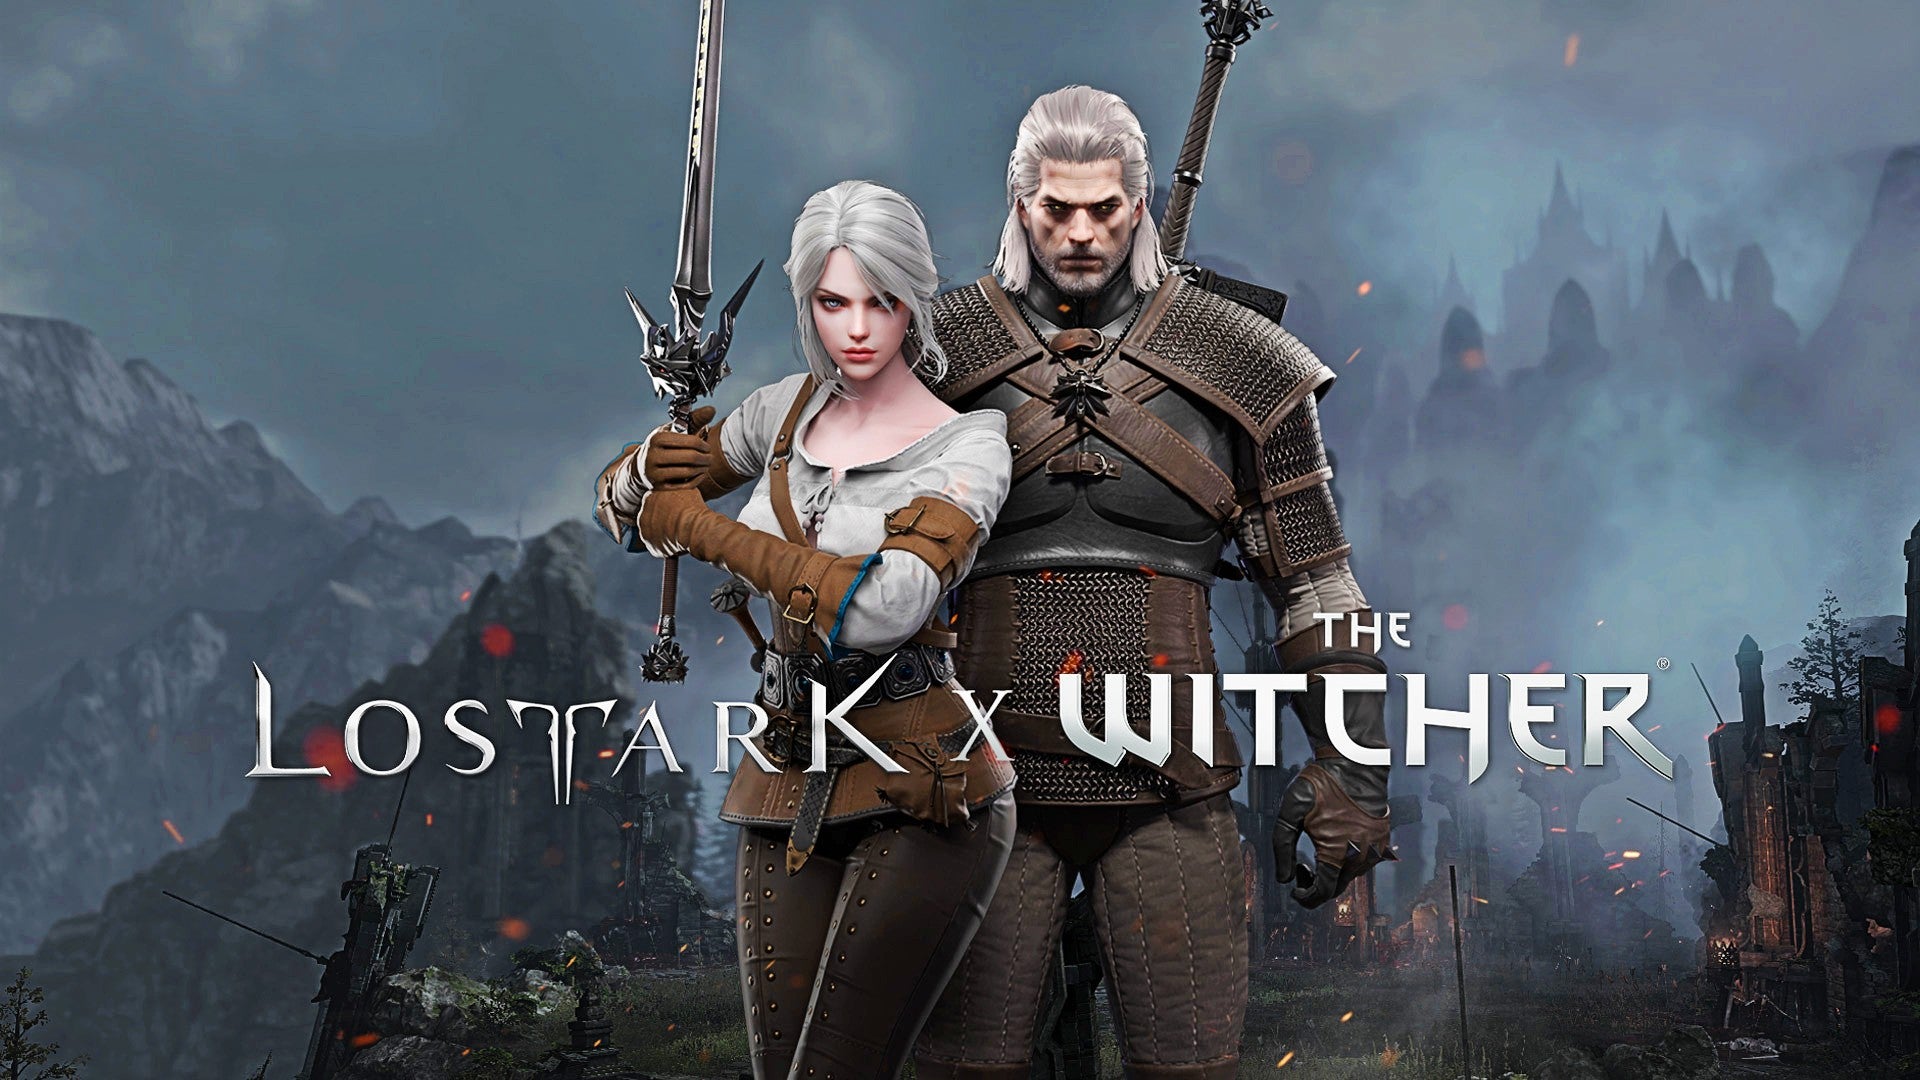 Bilder zu Lost Ark: Geralt und Ciri haben es ins Spiel geschafft und brauchen jetzt eure Hilfe